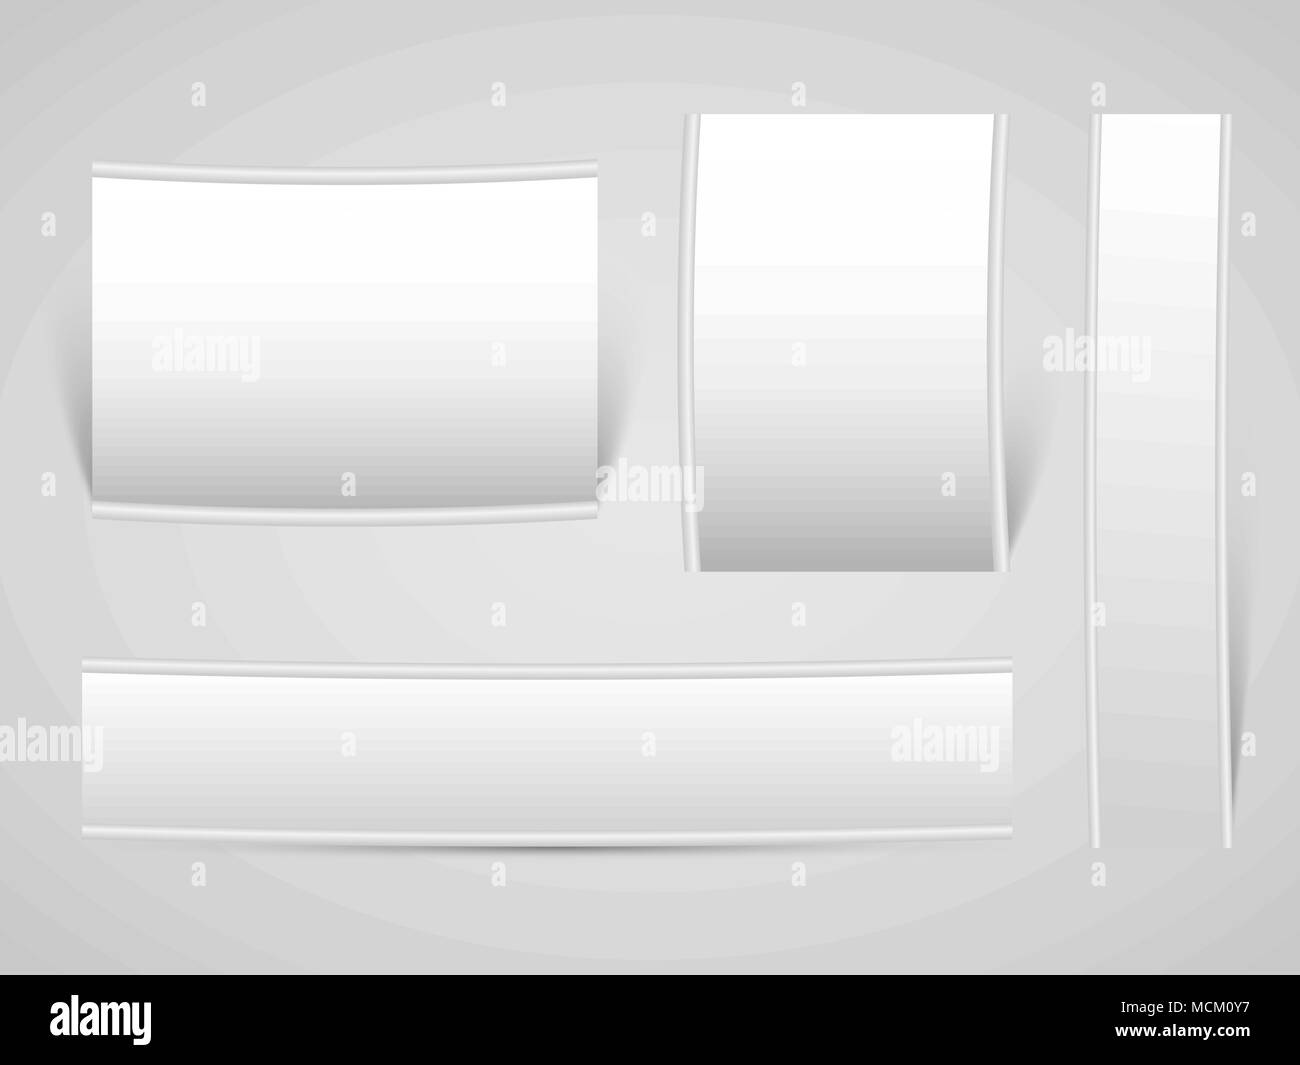 Raccolta di orizzontale e verticale di banner e roll-up con ombre, elemento  di design Immagine e Vettoriale - Alamy